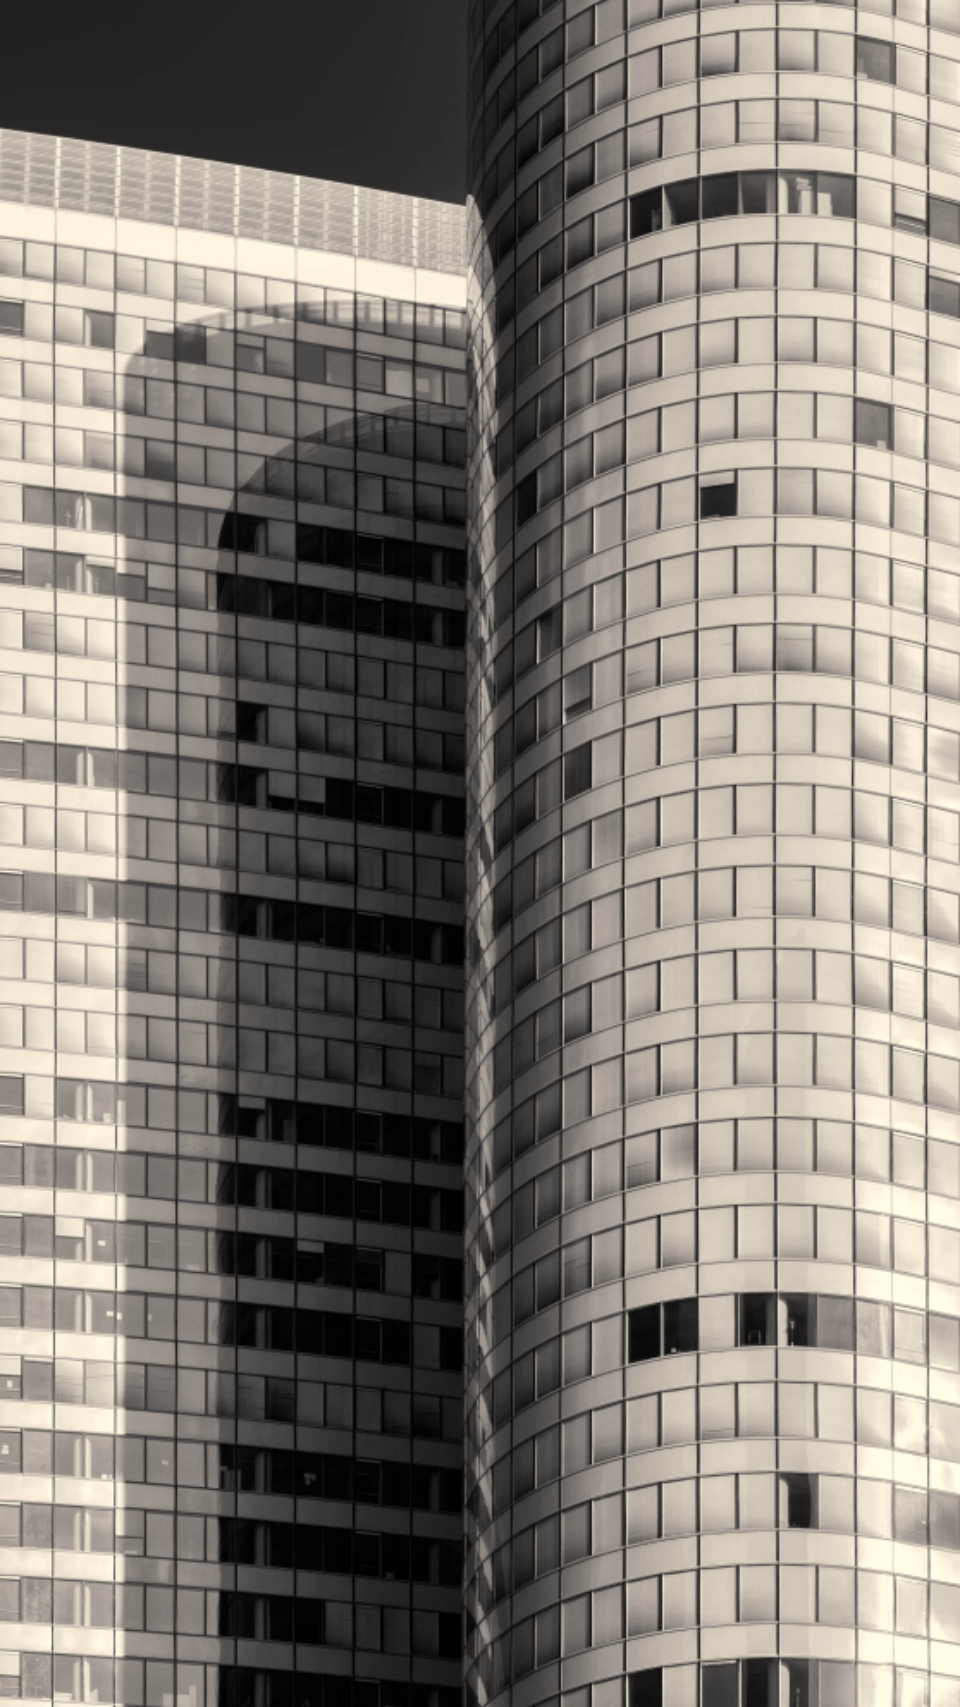 City Buildings